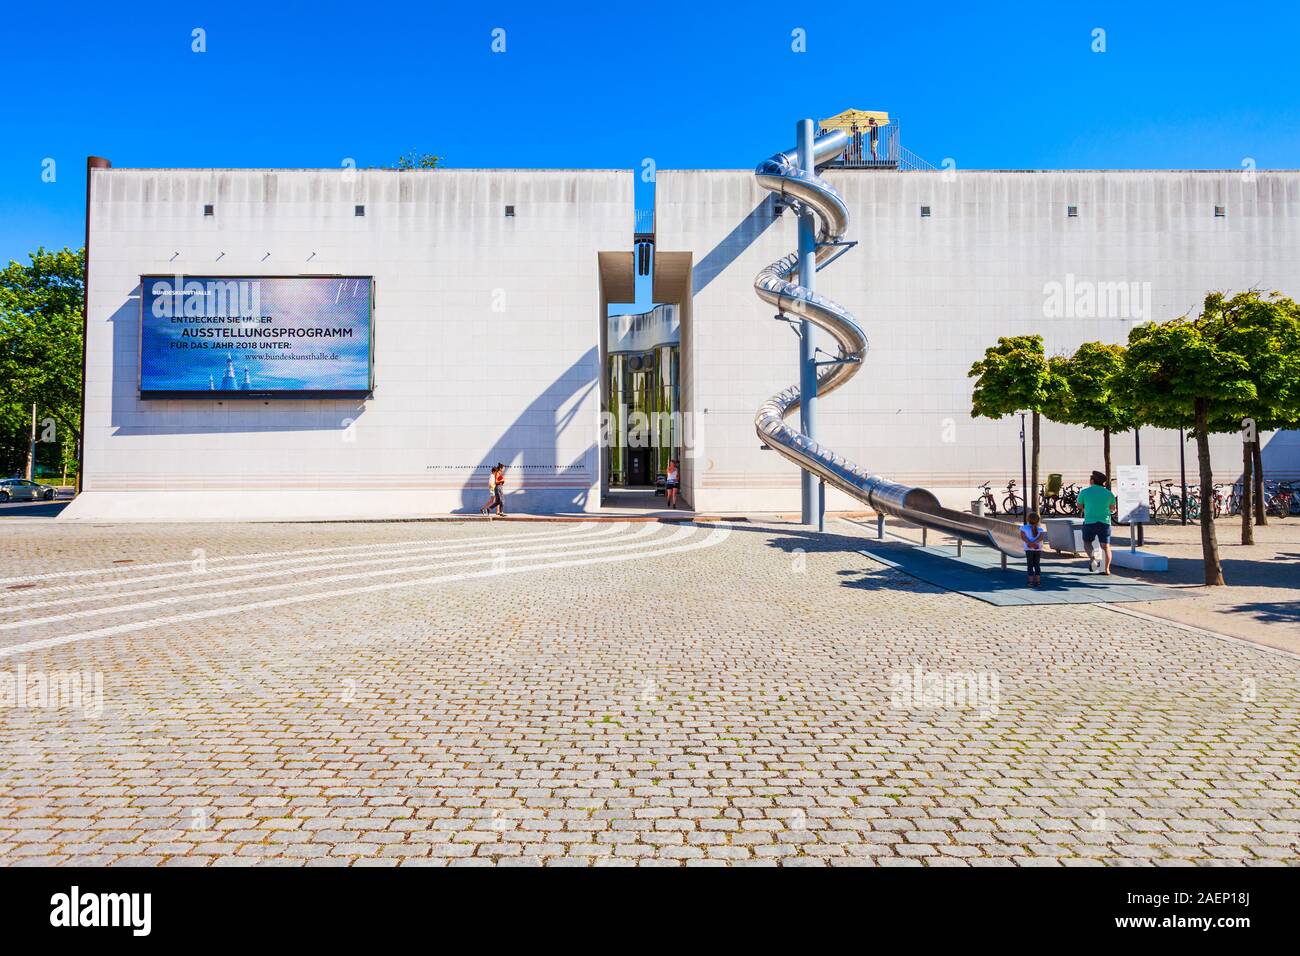 BONN, Allemagne - 29 juin 2018 : Bundeskunsthalle ou fédérale et de l'art salle d'exposition de la ville de Bonn, Allemagne Banque D'Images